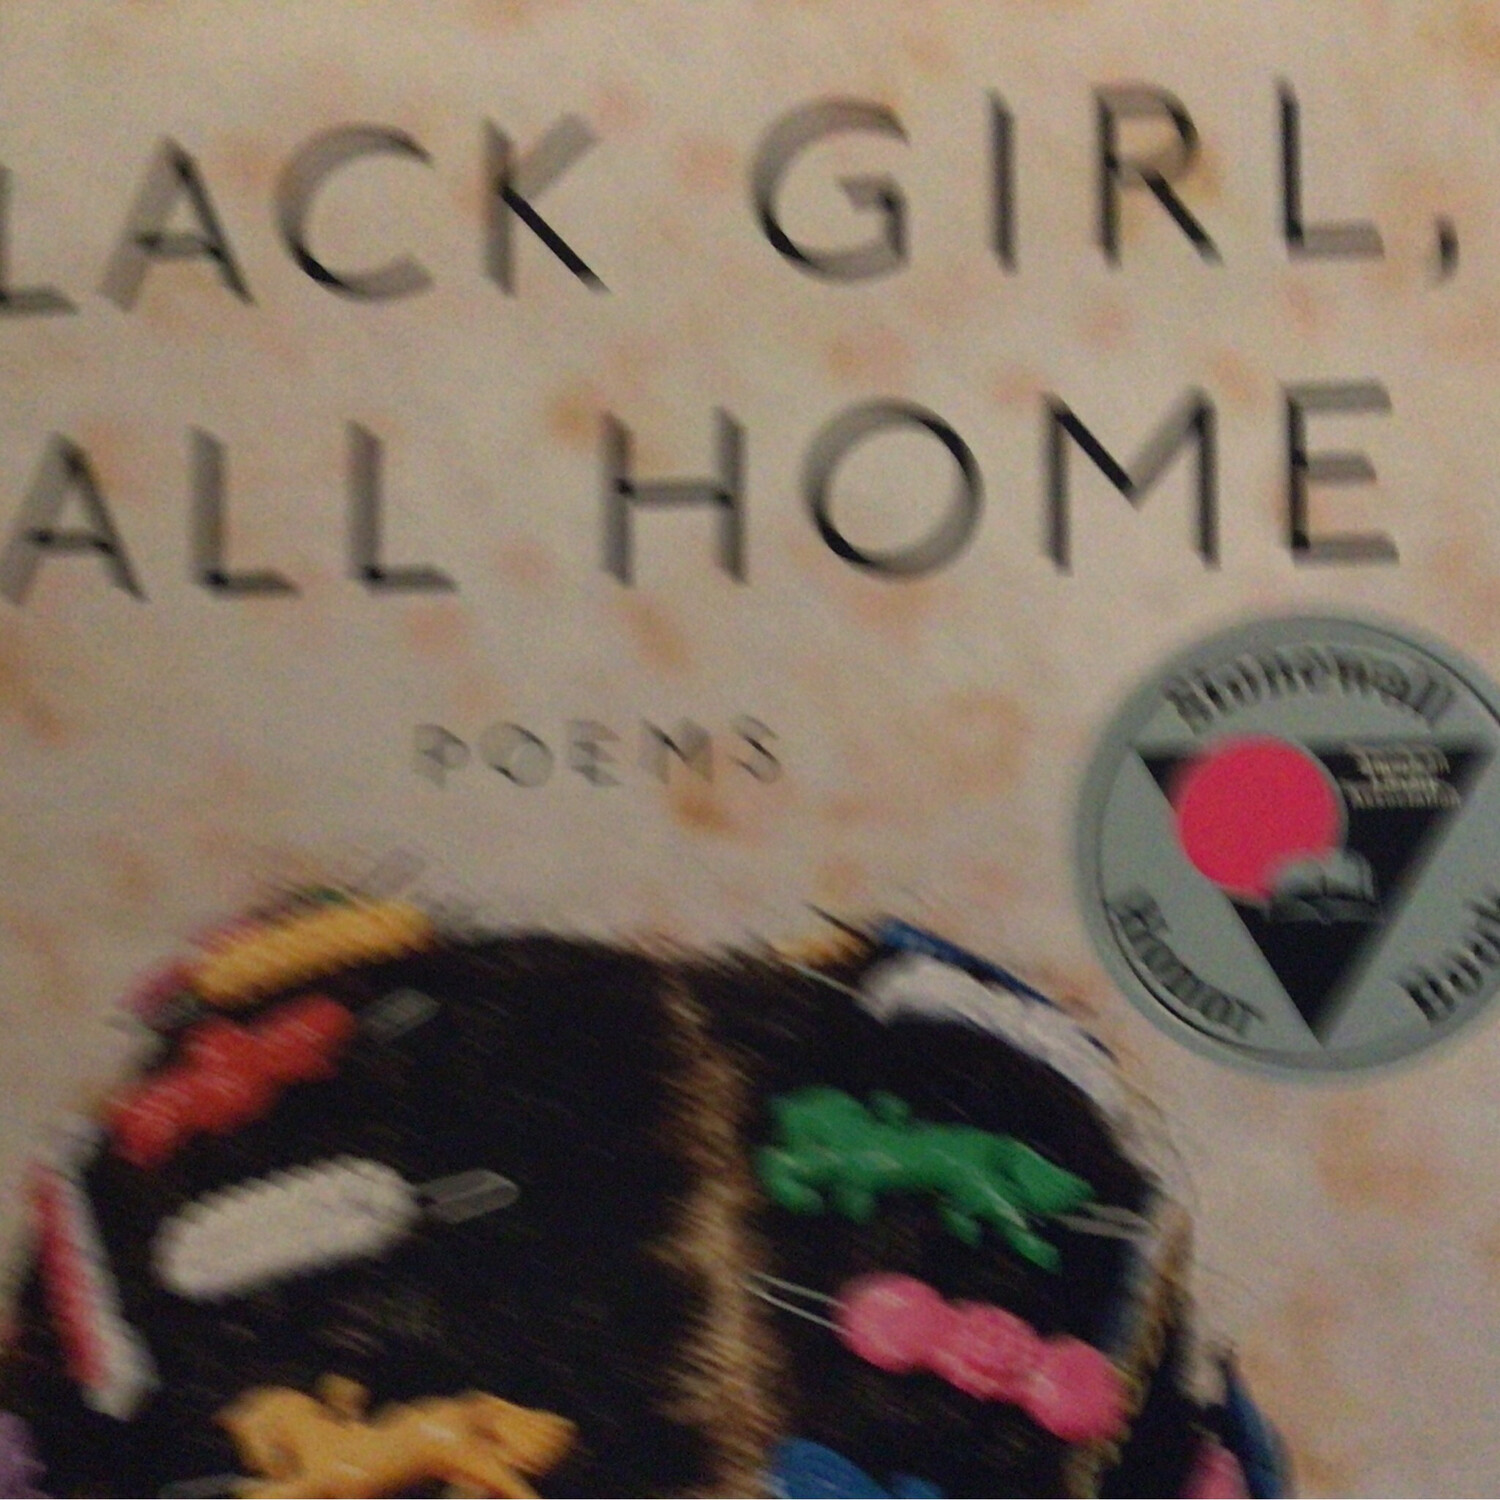 Books Black Girl Home